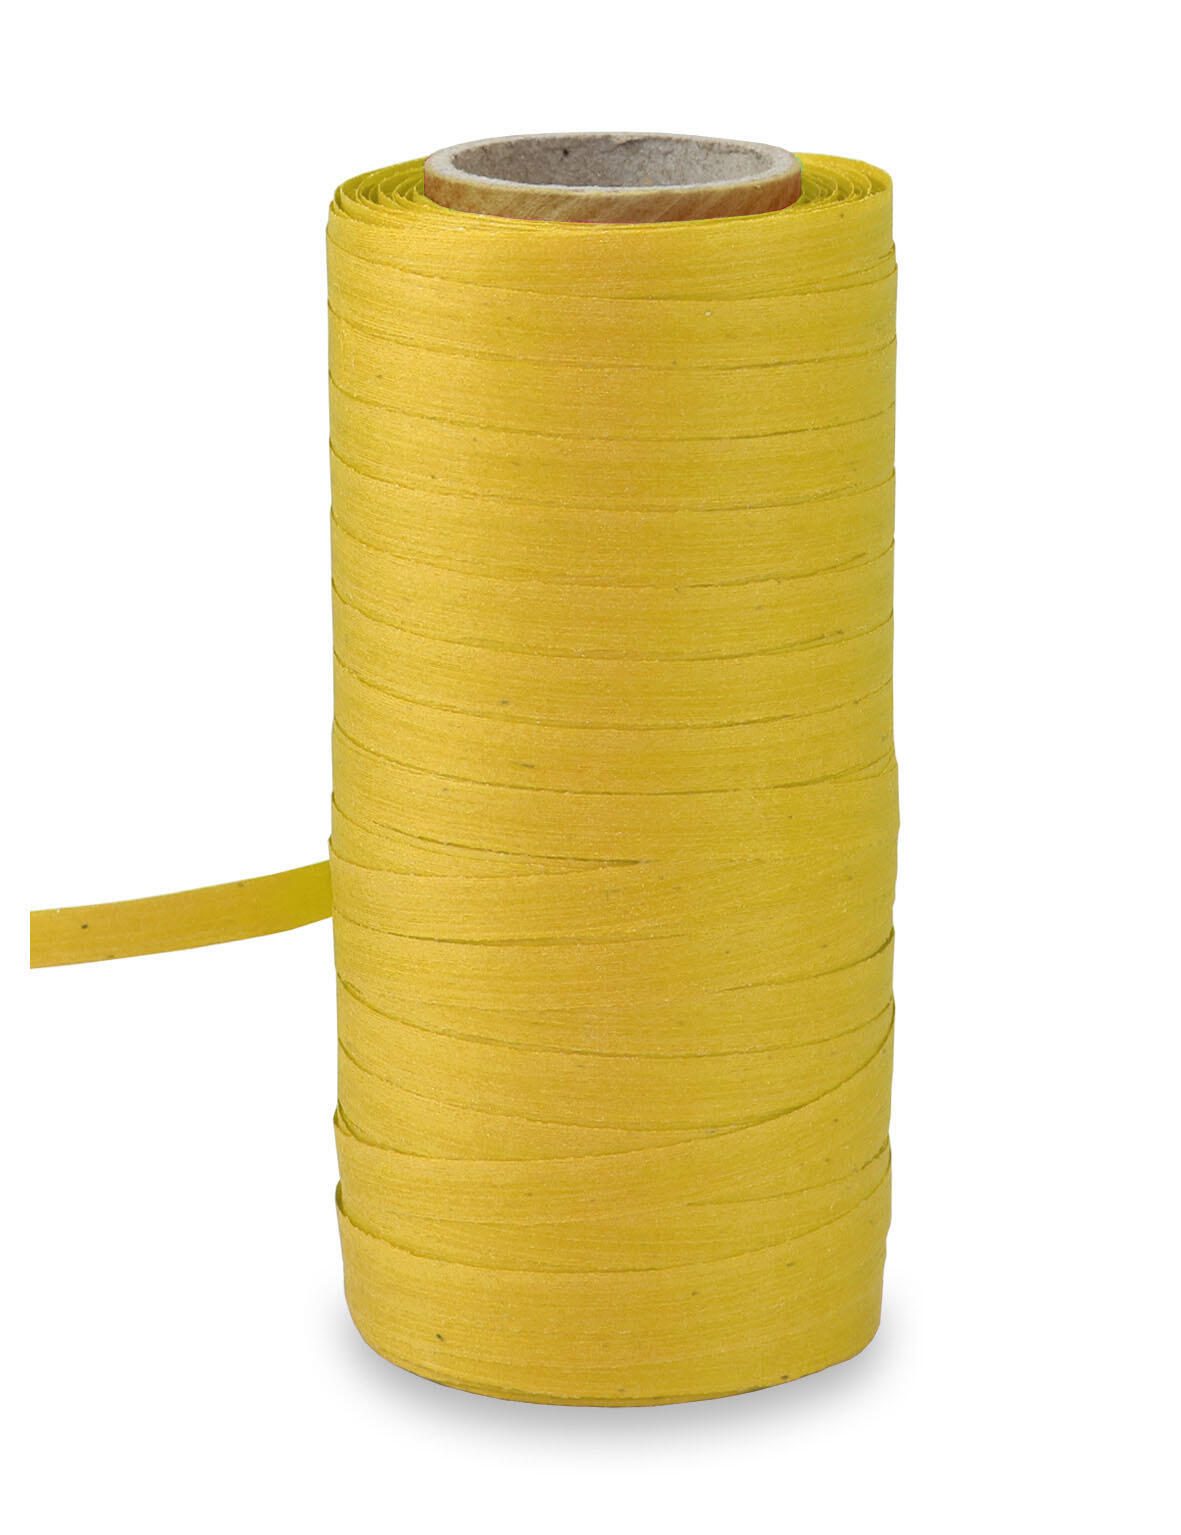 PRÄSENT Baumwollbänder gelb